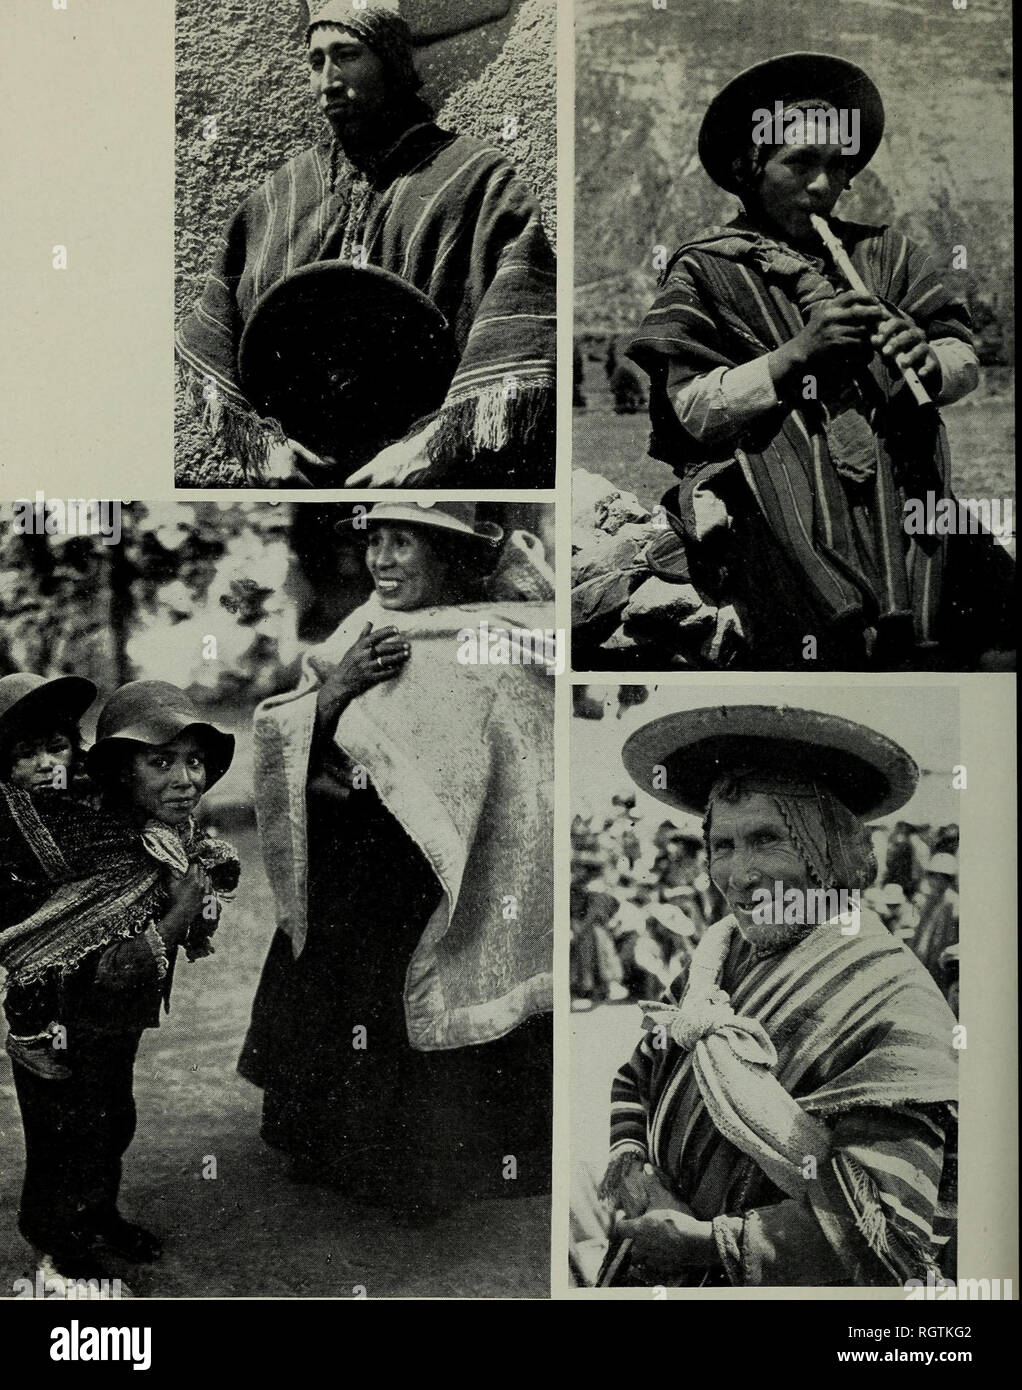 Bulletin. De l'ethnologie. 98. plaque-types Quechua. En haut (de gauche) :  UN Highland Quechua. (Avec la permission de Ber- nard Mishkin.) Haut de  page (à droite) : Un joueur de flûte. (